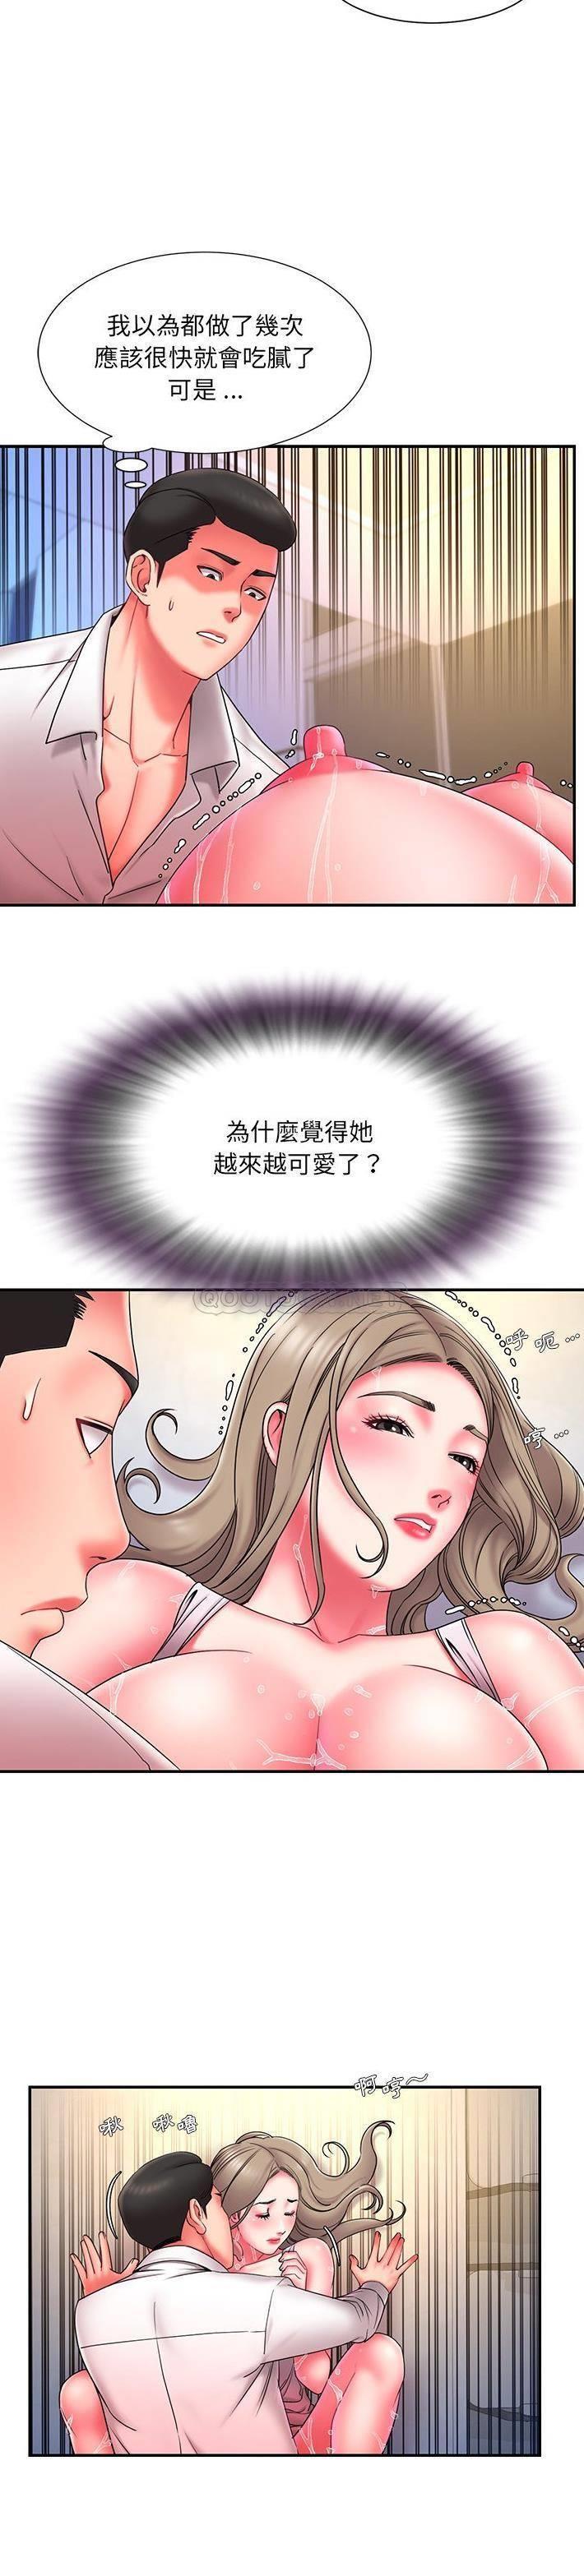 韩国污漫画 被拋棄的男人(男孩沒人愛) 第13话 4